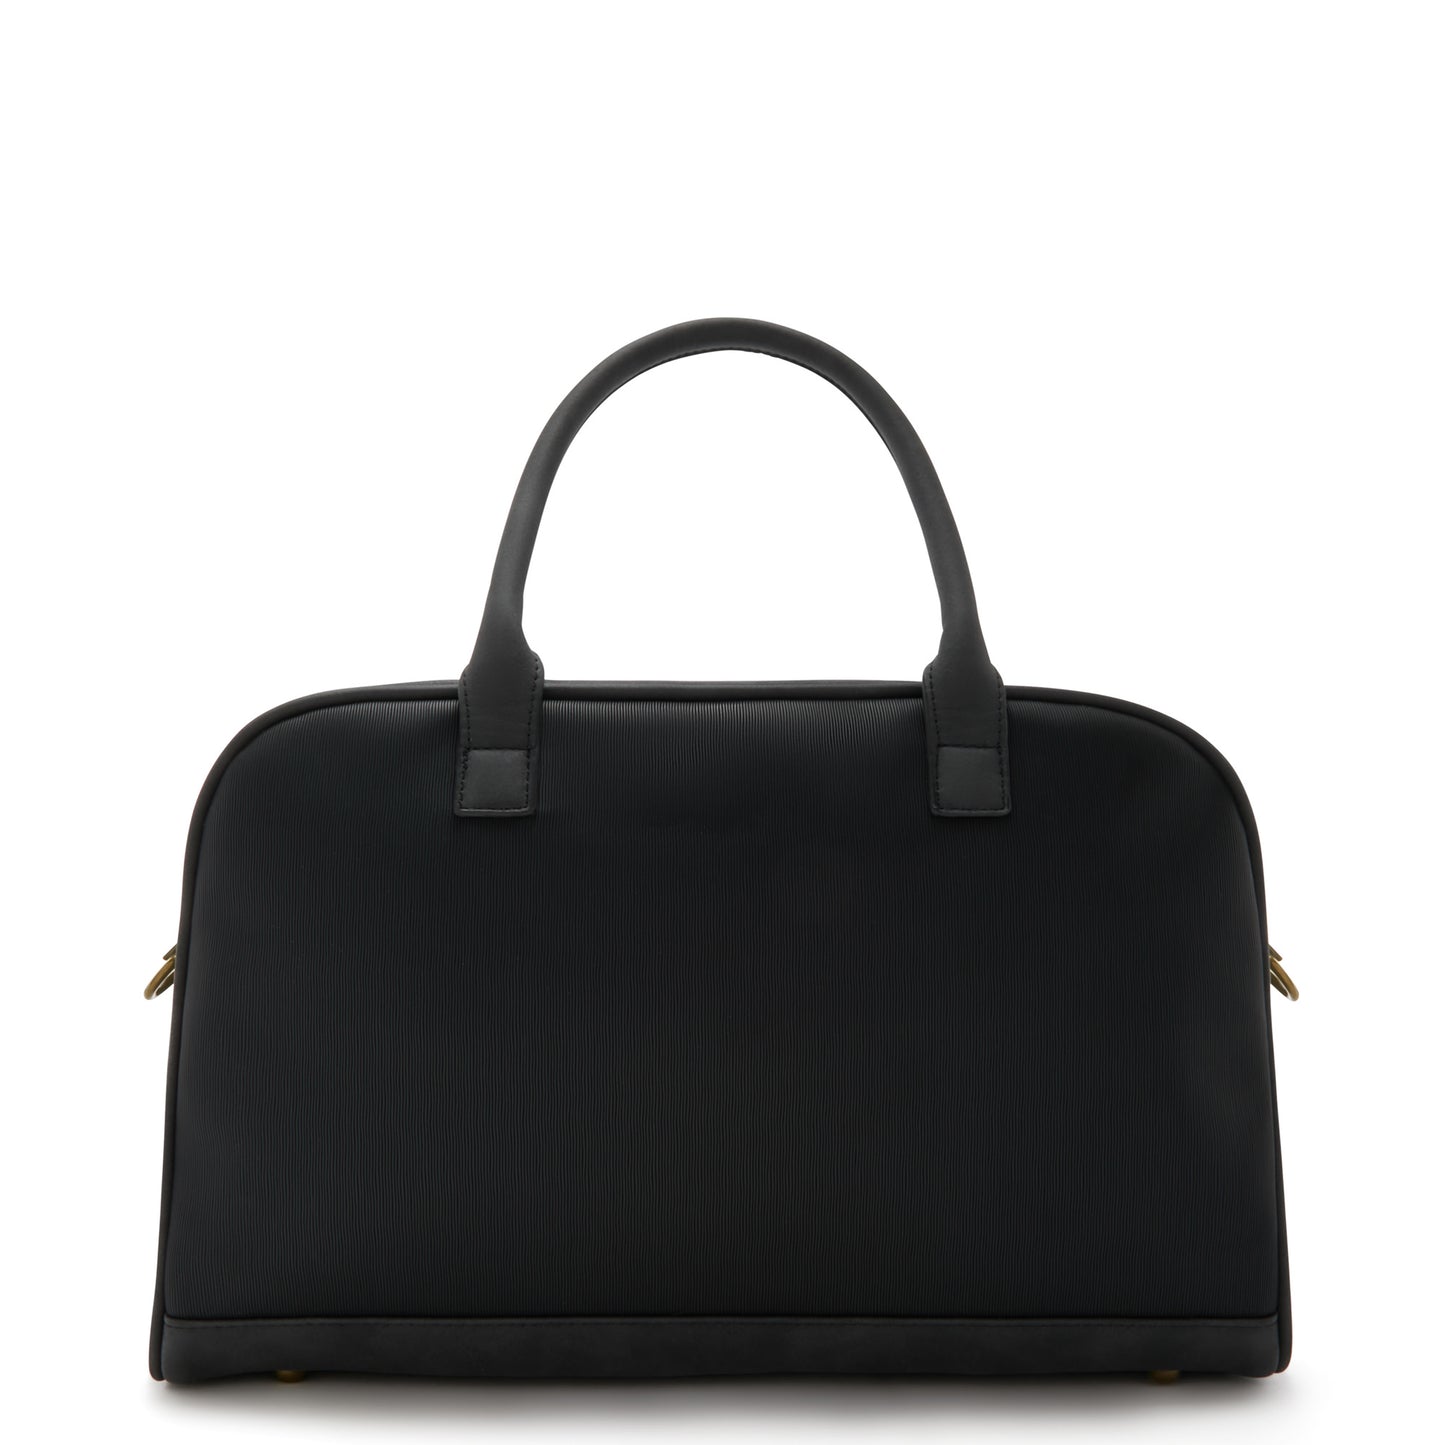 Essential Bag black handbag